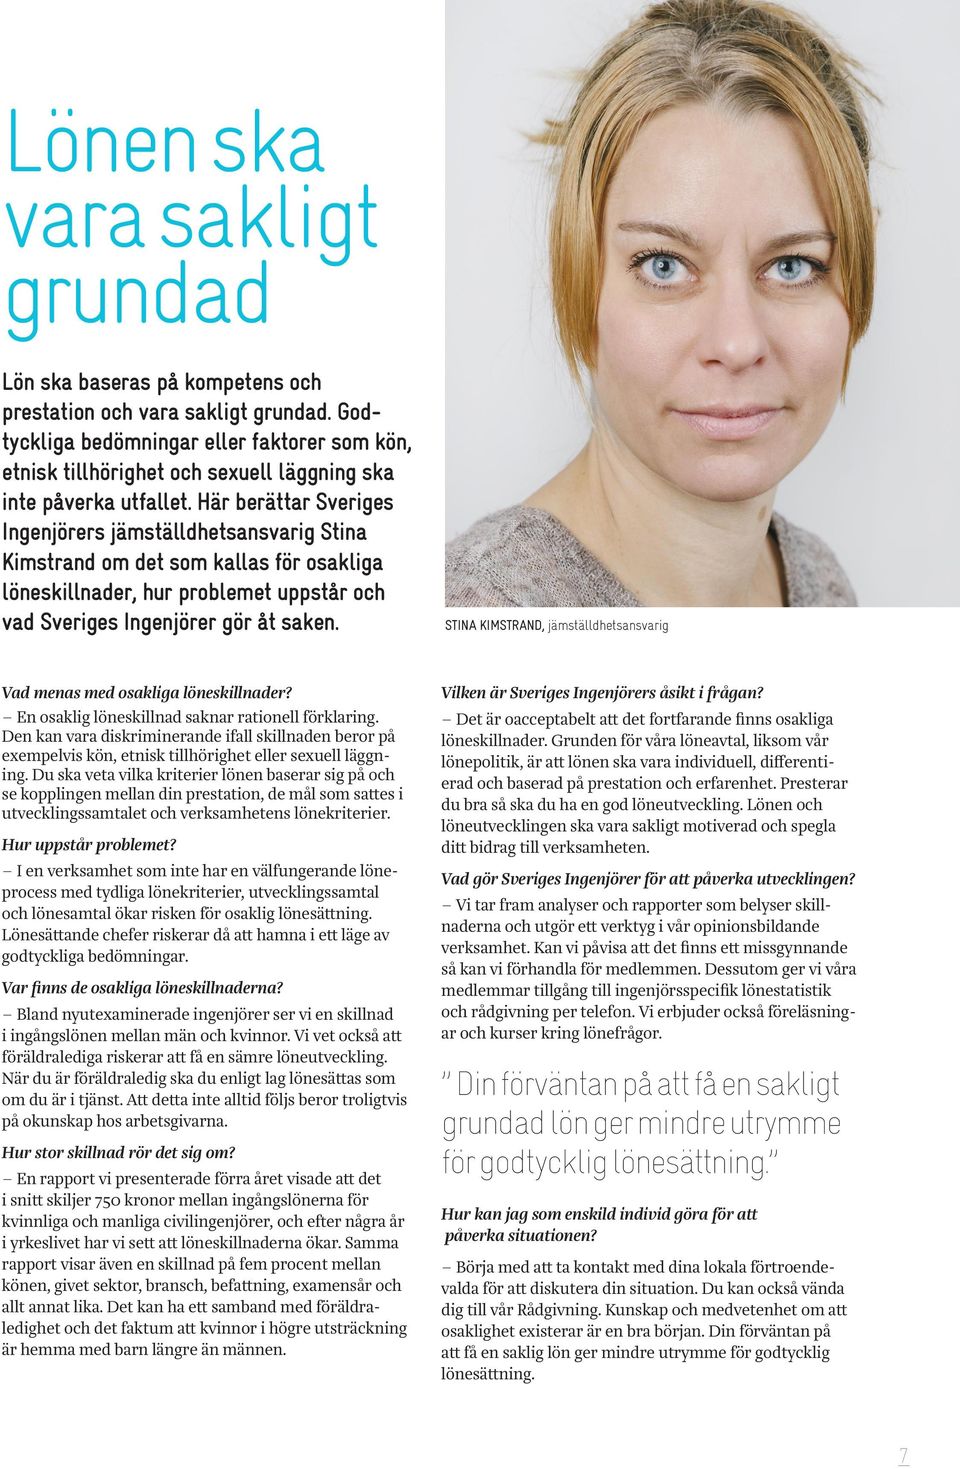 Här berättar Sveriges Ingenjörers jämställdhetsansvarig Stina Kimstrand om det som kallas för osakliga löneskillnader, hur problemet uppstår och vad Sveriges Ingenjörer gör åt saken.